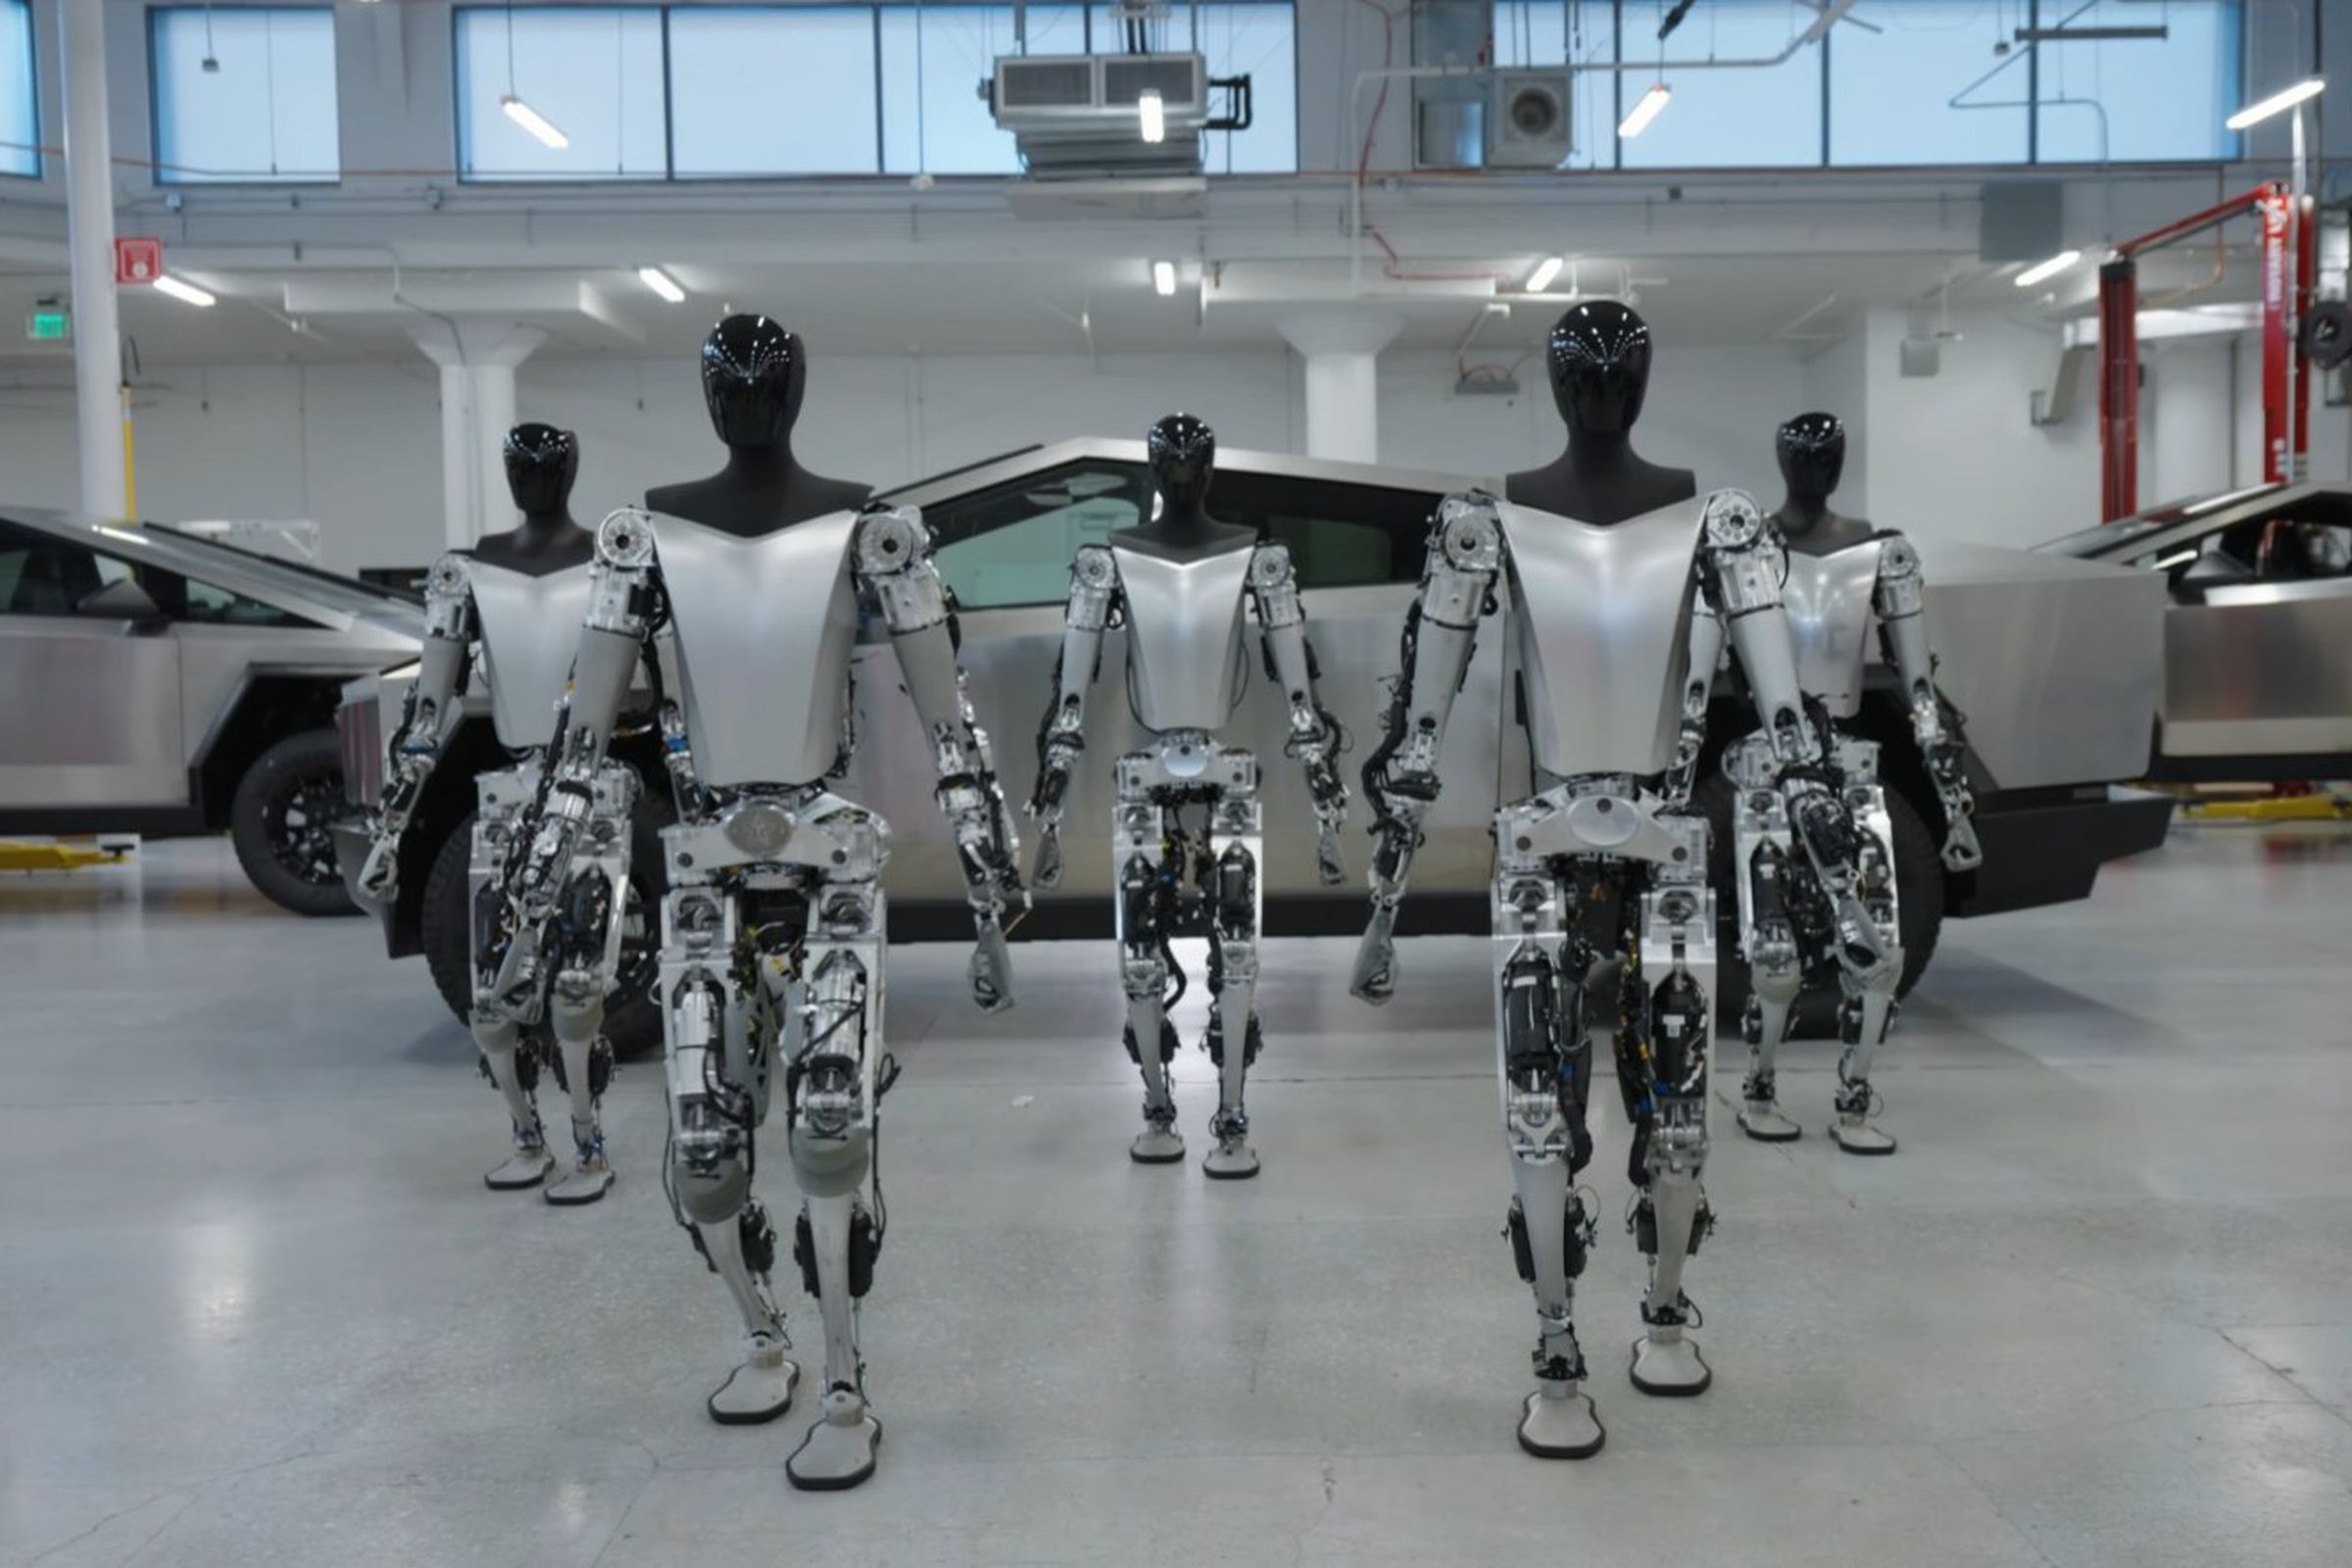 Tesla Bots shown walking in front of a Cybertruck